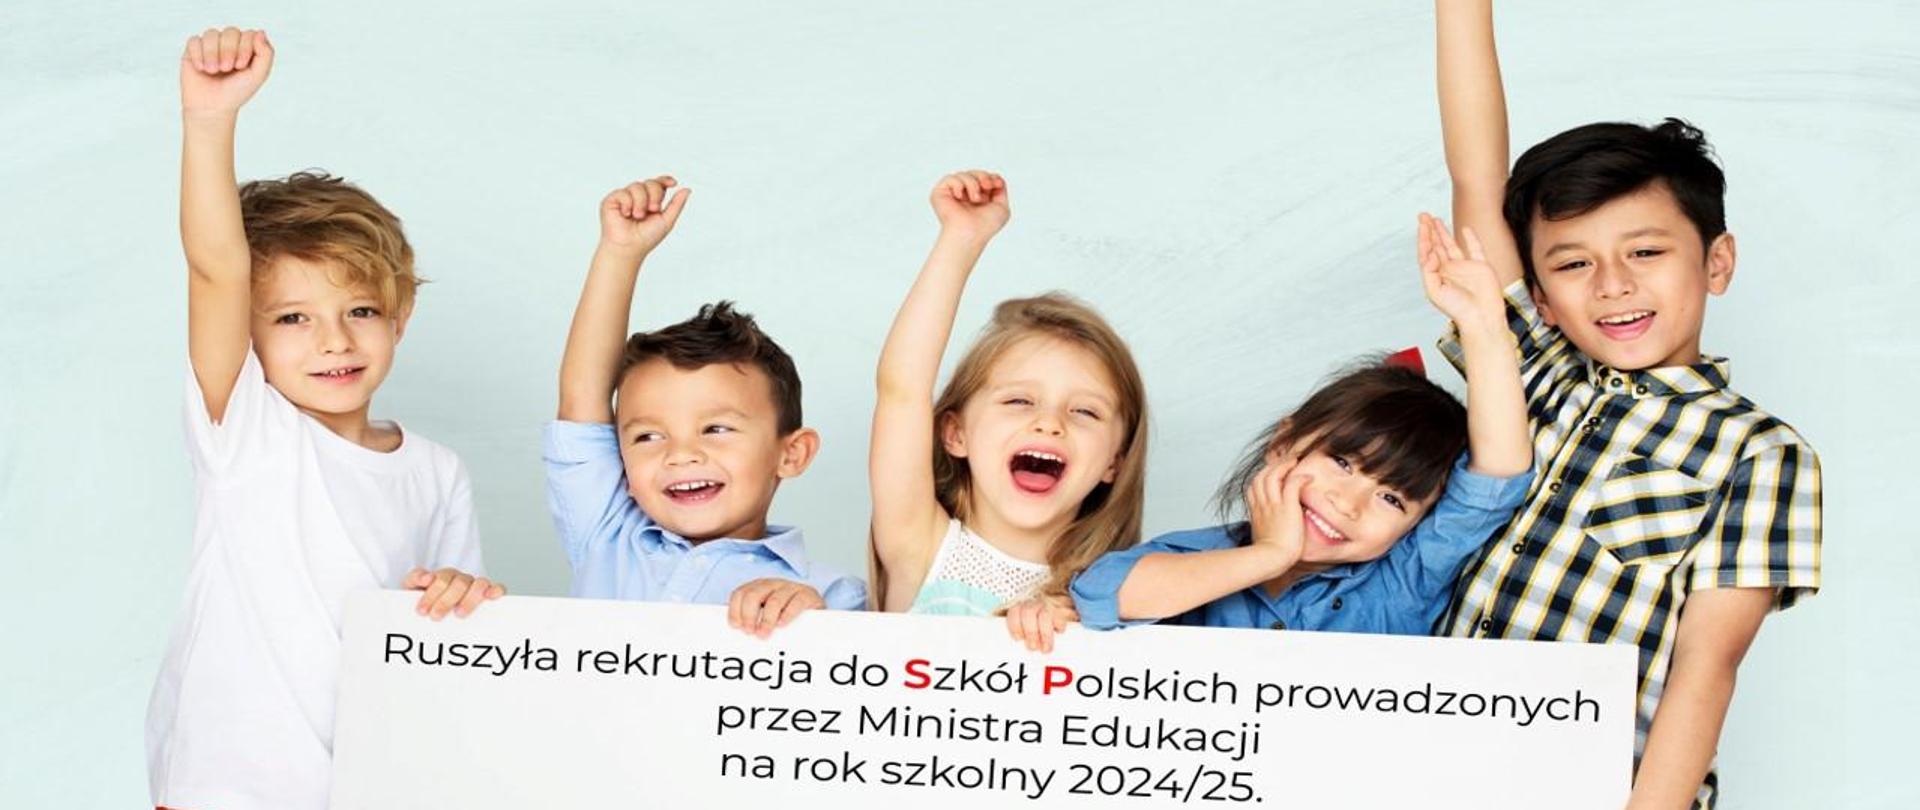 Rekrutacja do Szkół Polskich